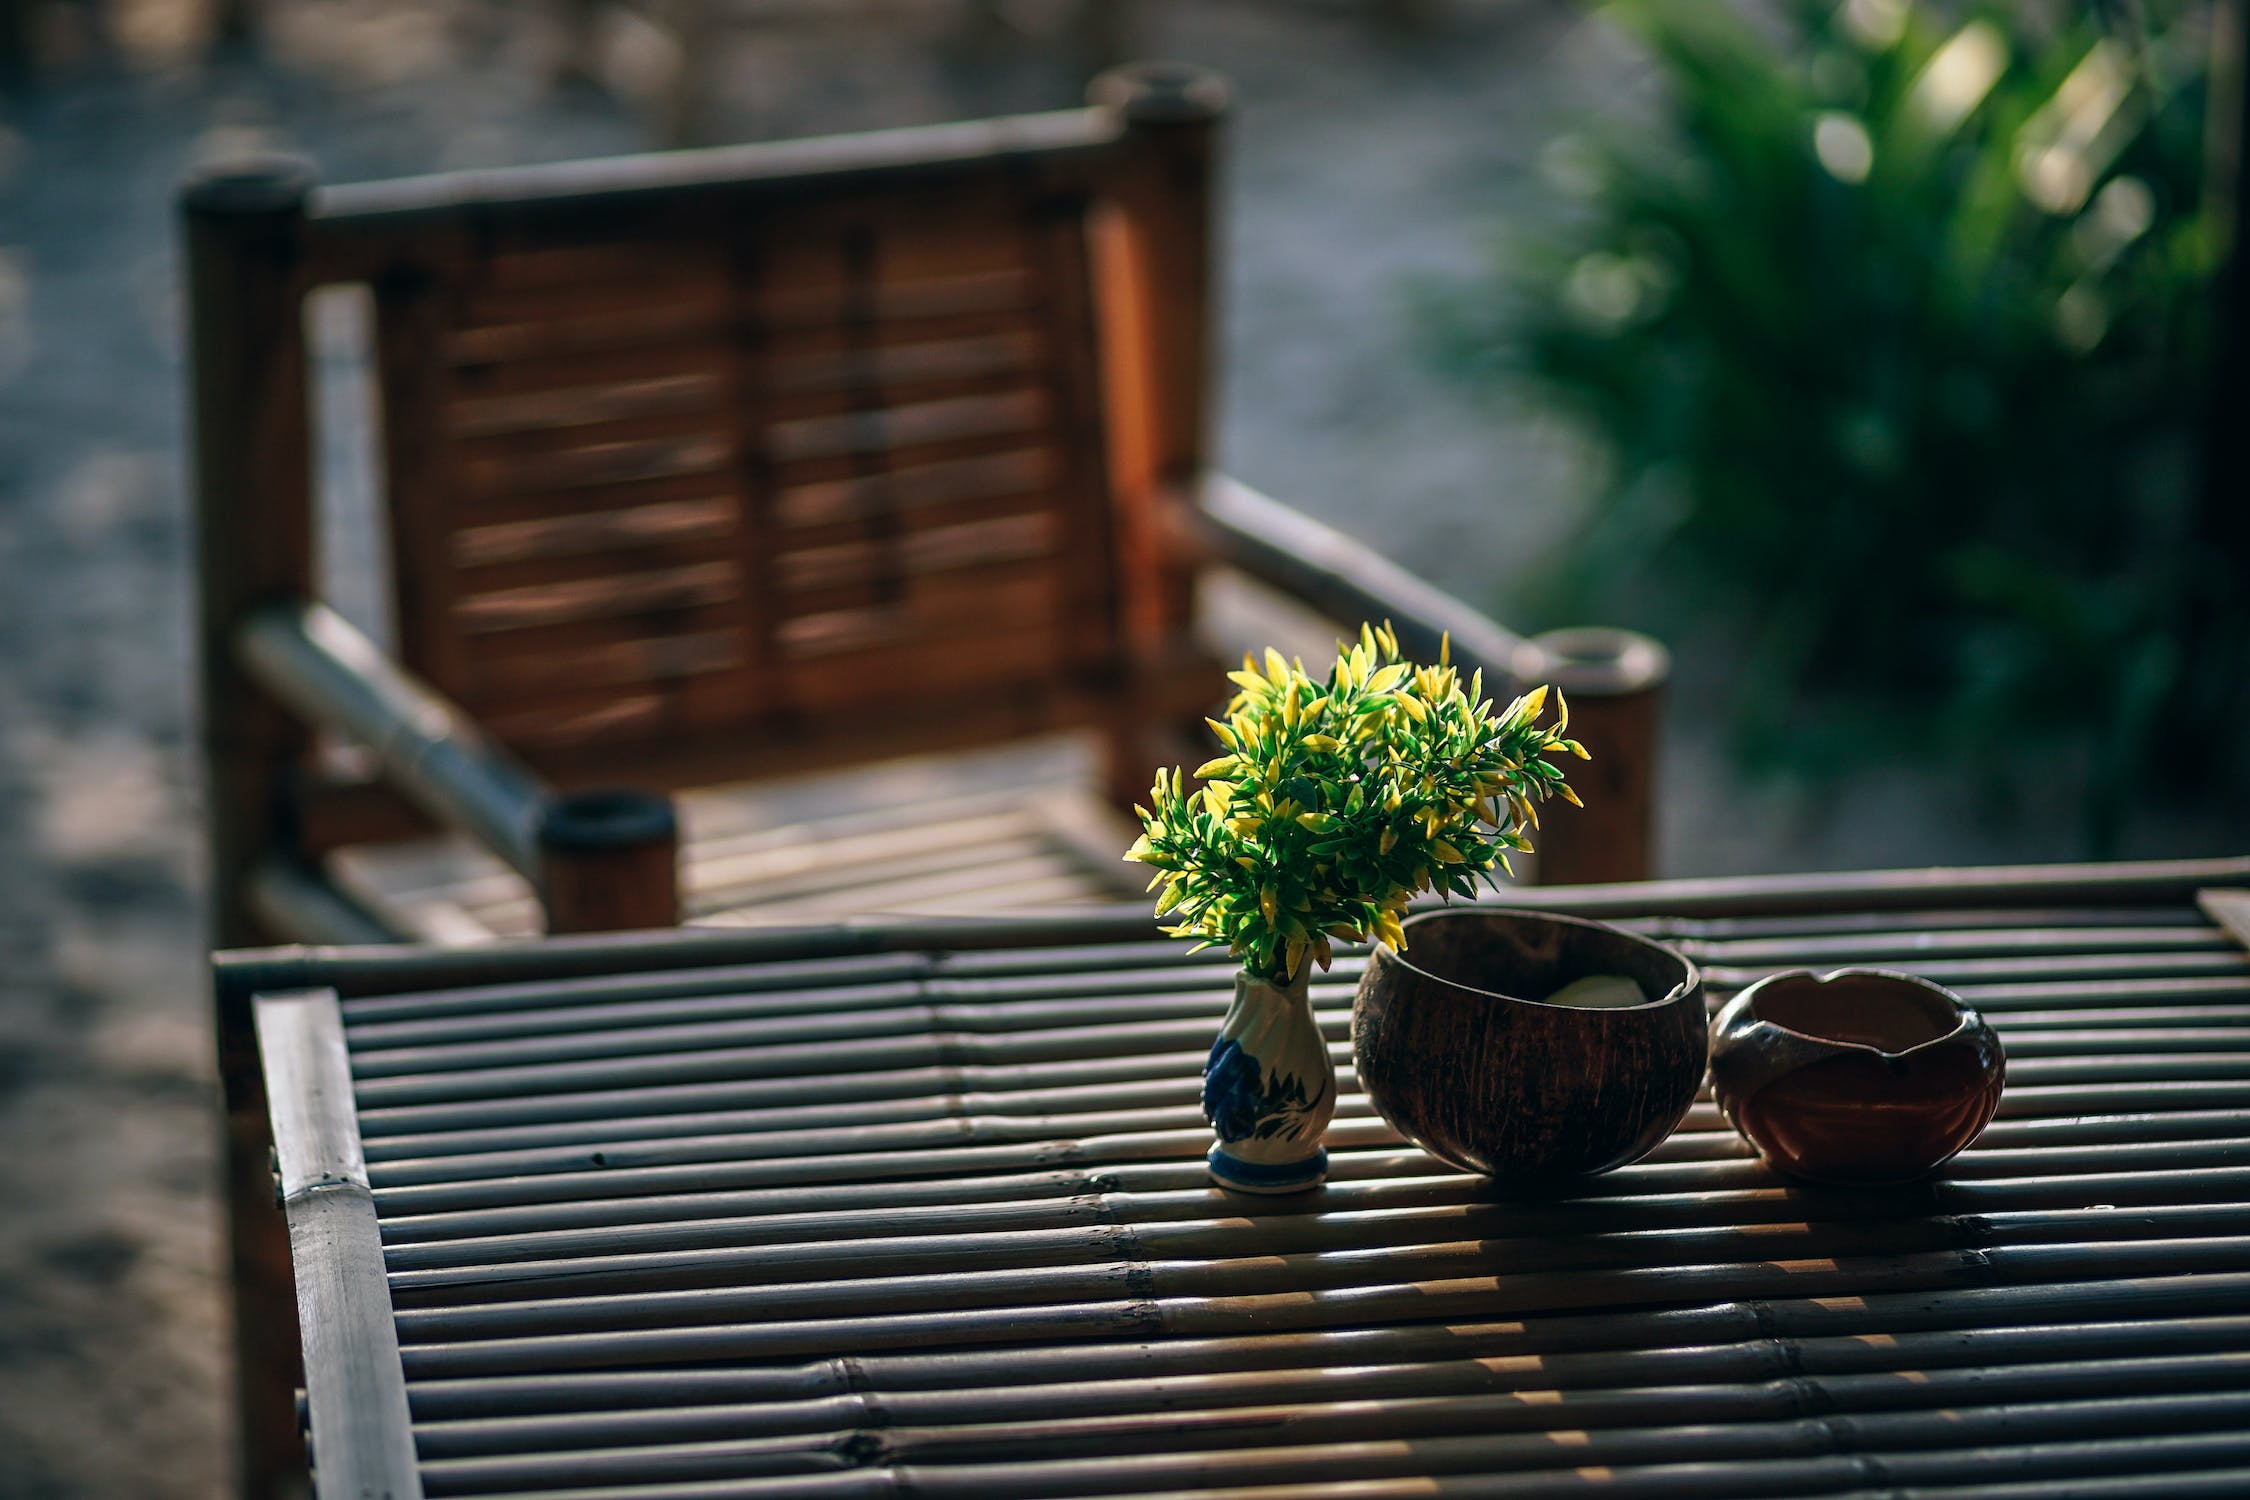 Sur l'image, on voit une table et une chaise de jardin faites en bambou. Un bouquet de feuilles de bambou est disposé dans un vase blanc, avec deux bols en bambou sur la droite.